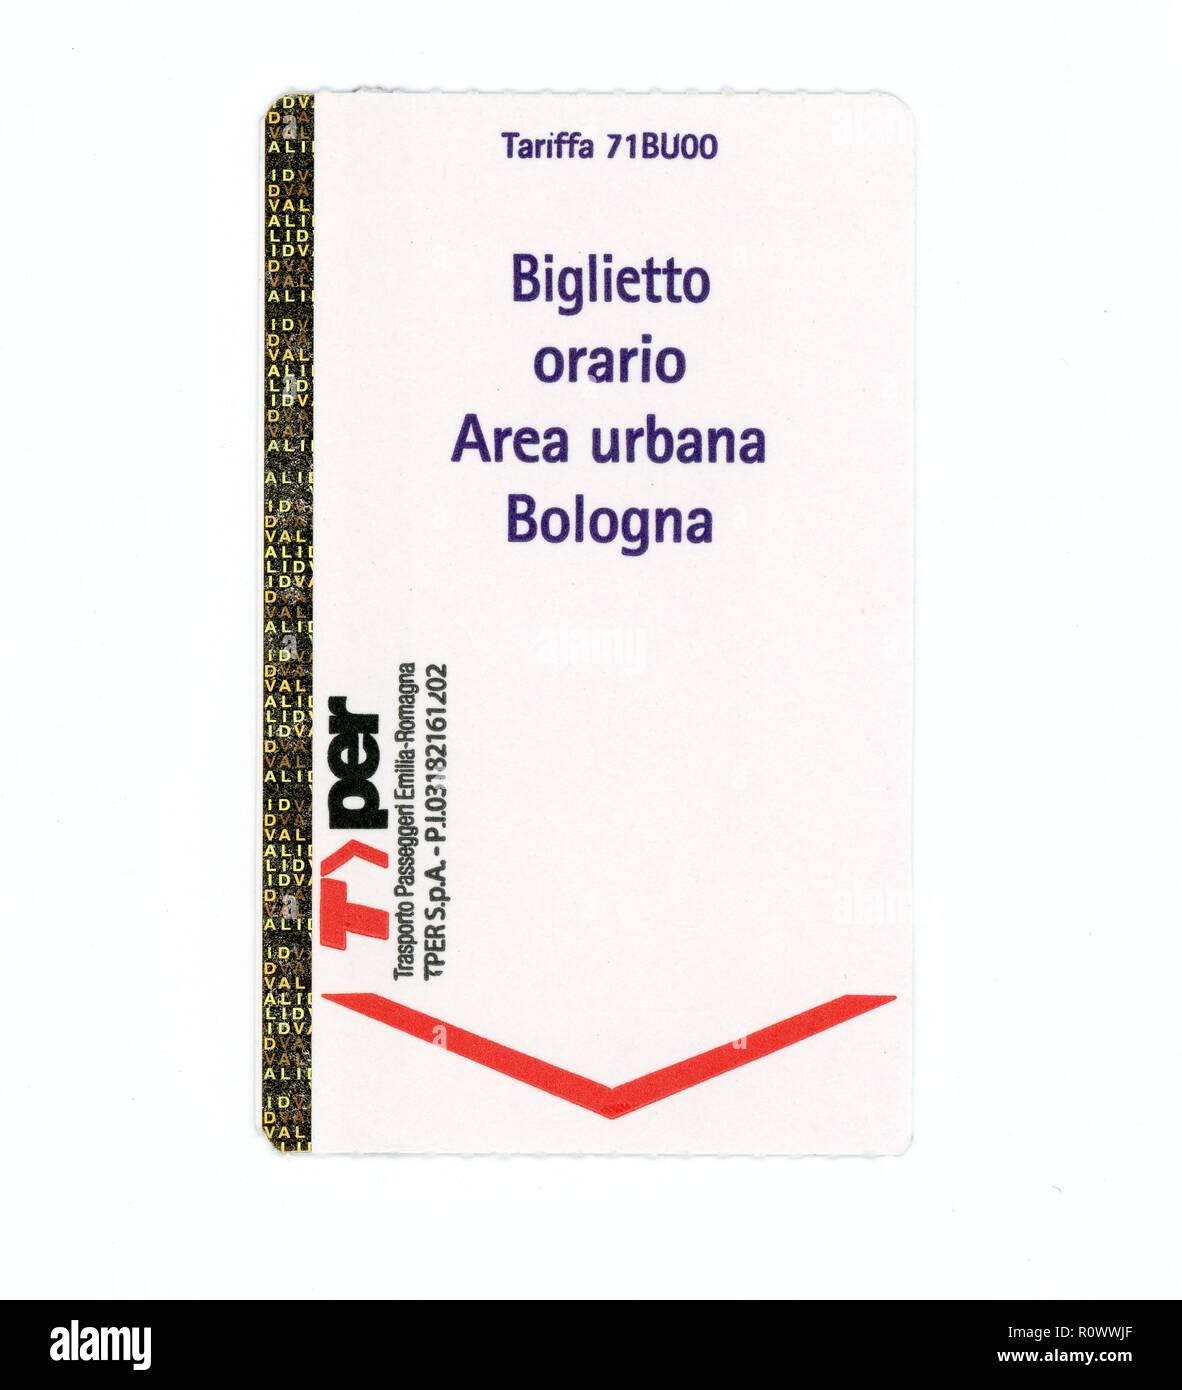 BOLOGNA, ITALIEN - ca. September 2018: stündliche Bus Ticket für Bologna Stadtgebiet (Biglietto orario Bereich urbana in Italienisch) Stockfoto